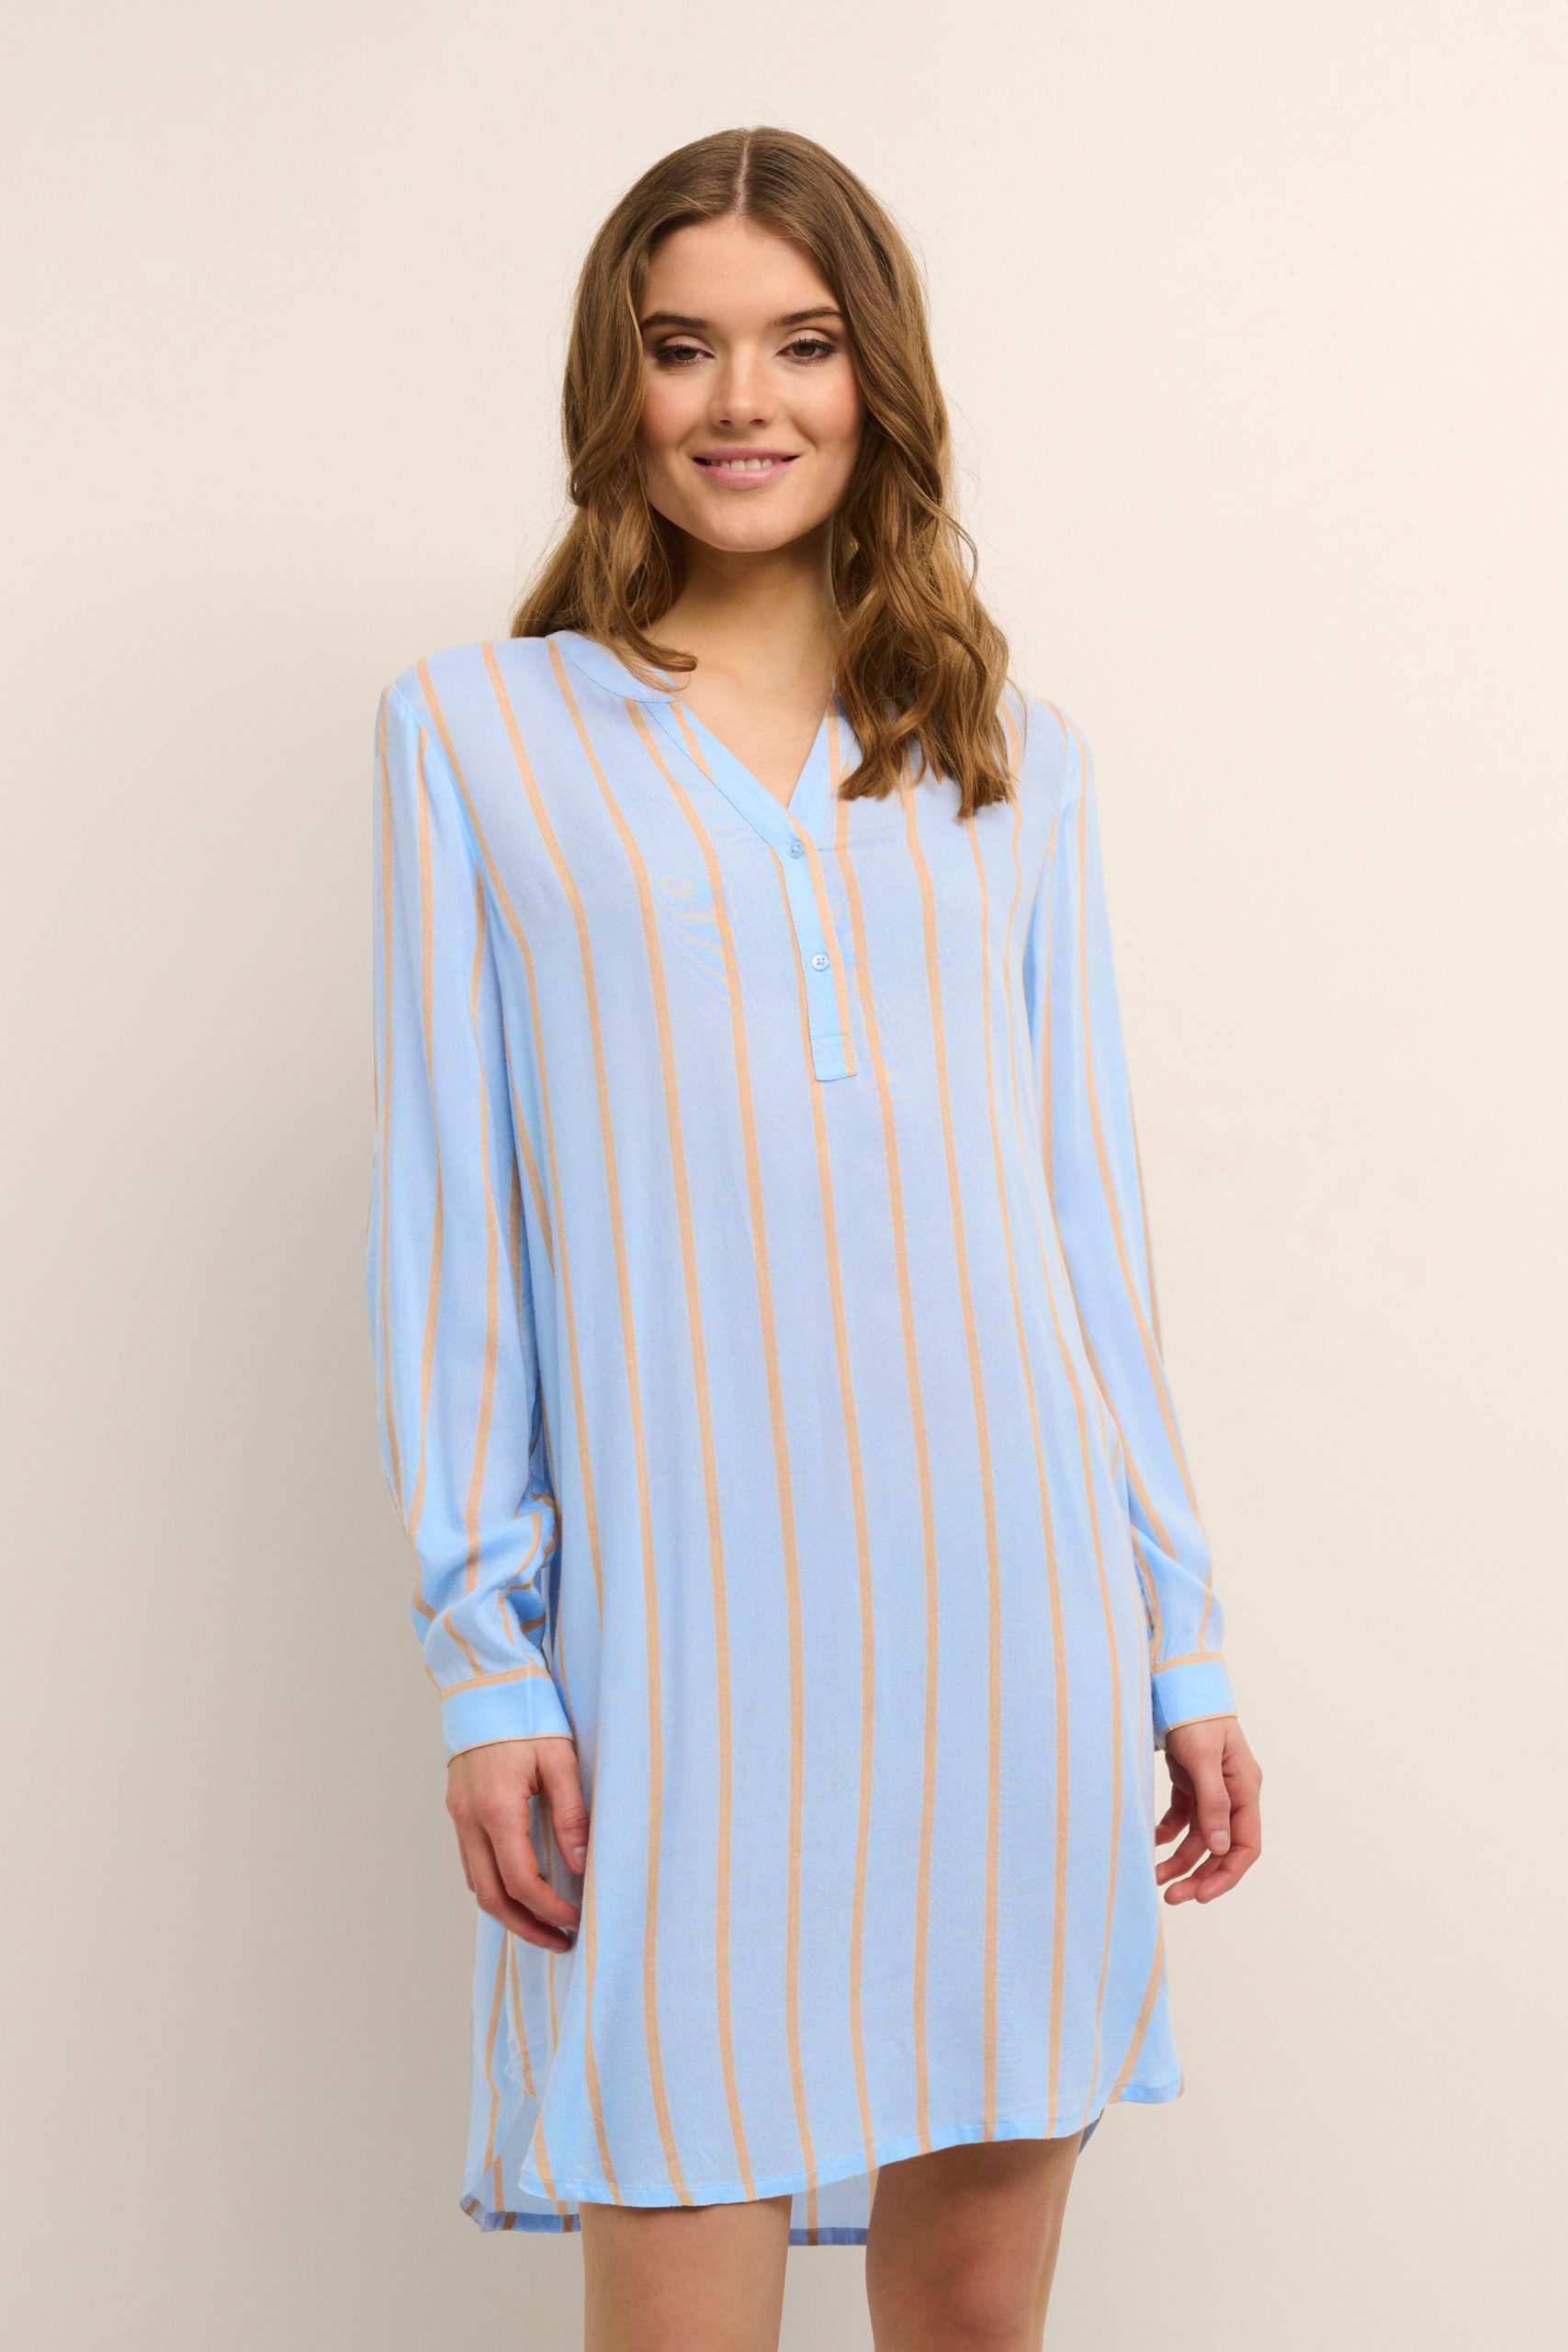 KAmarana Shirt Dress light blue front